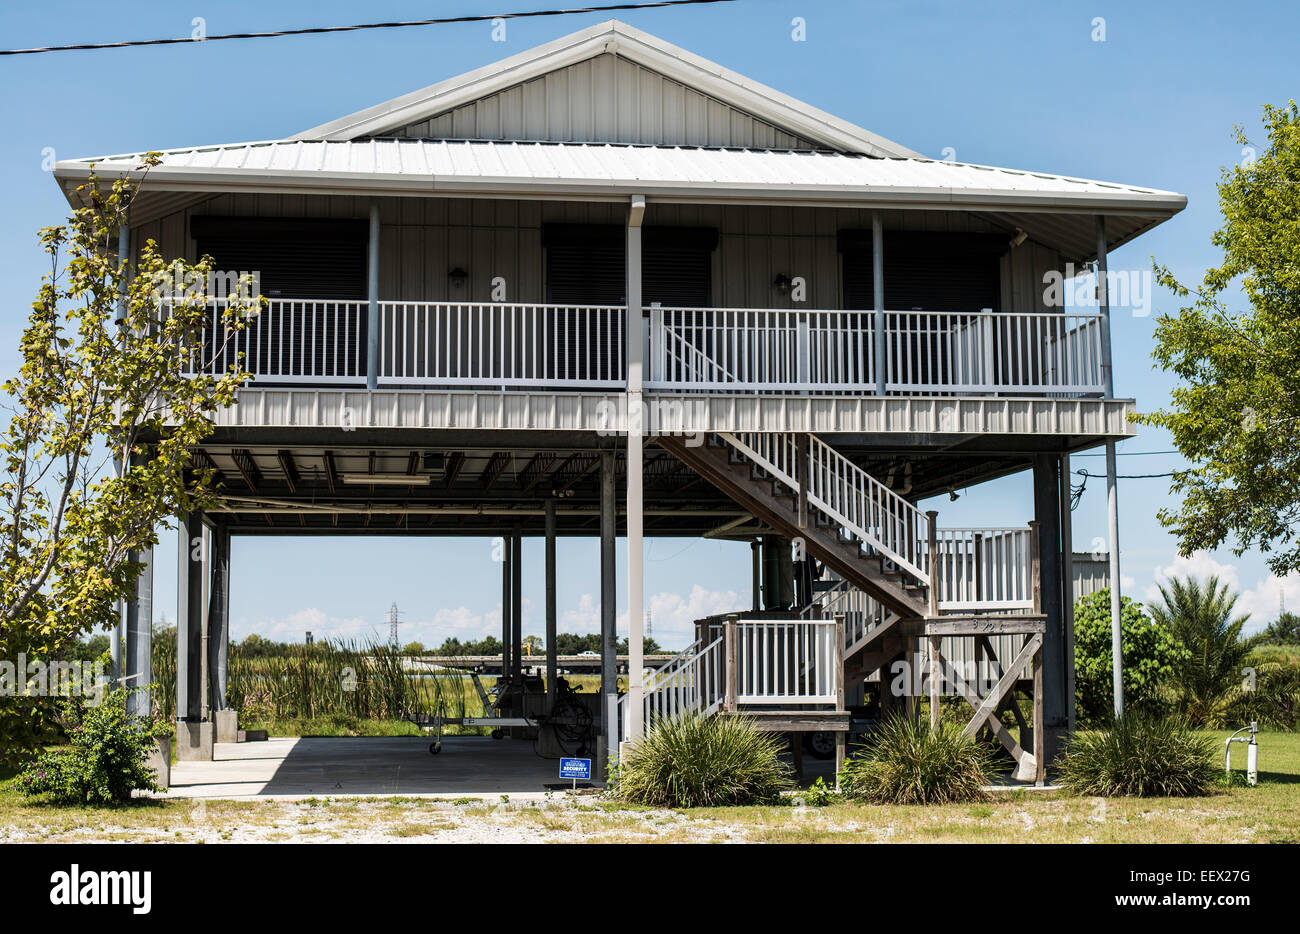 Gulf coast, house on stilts Stock Photo